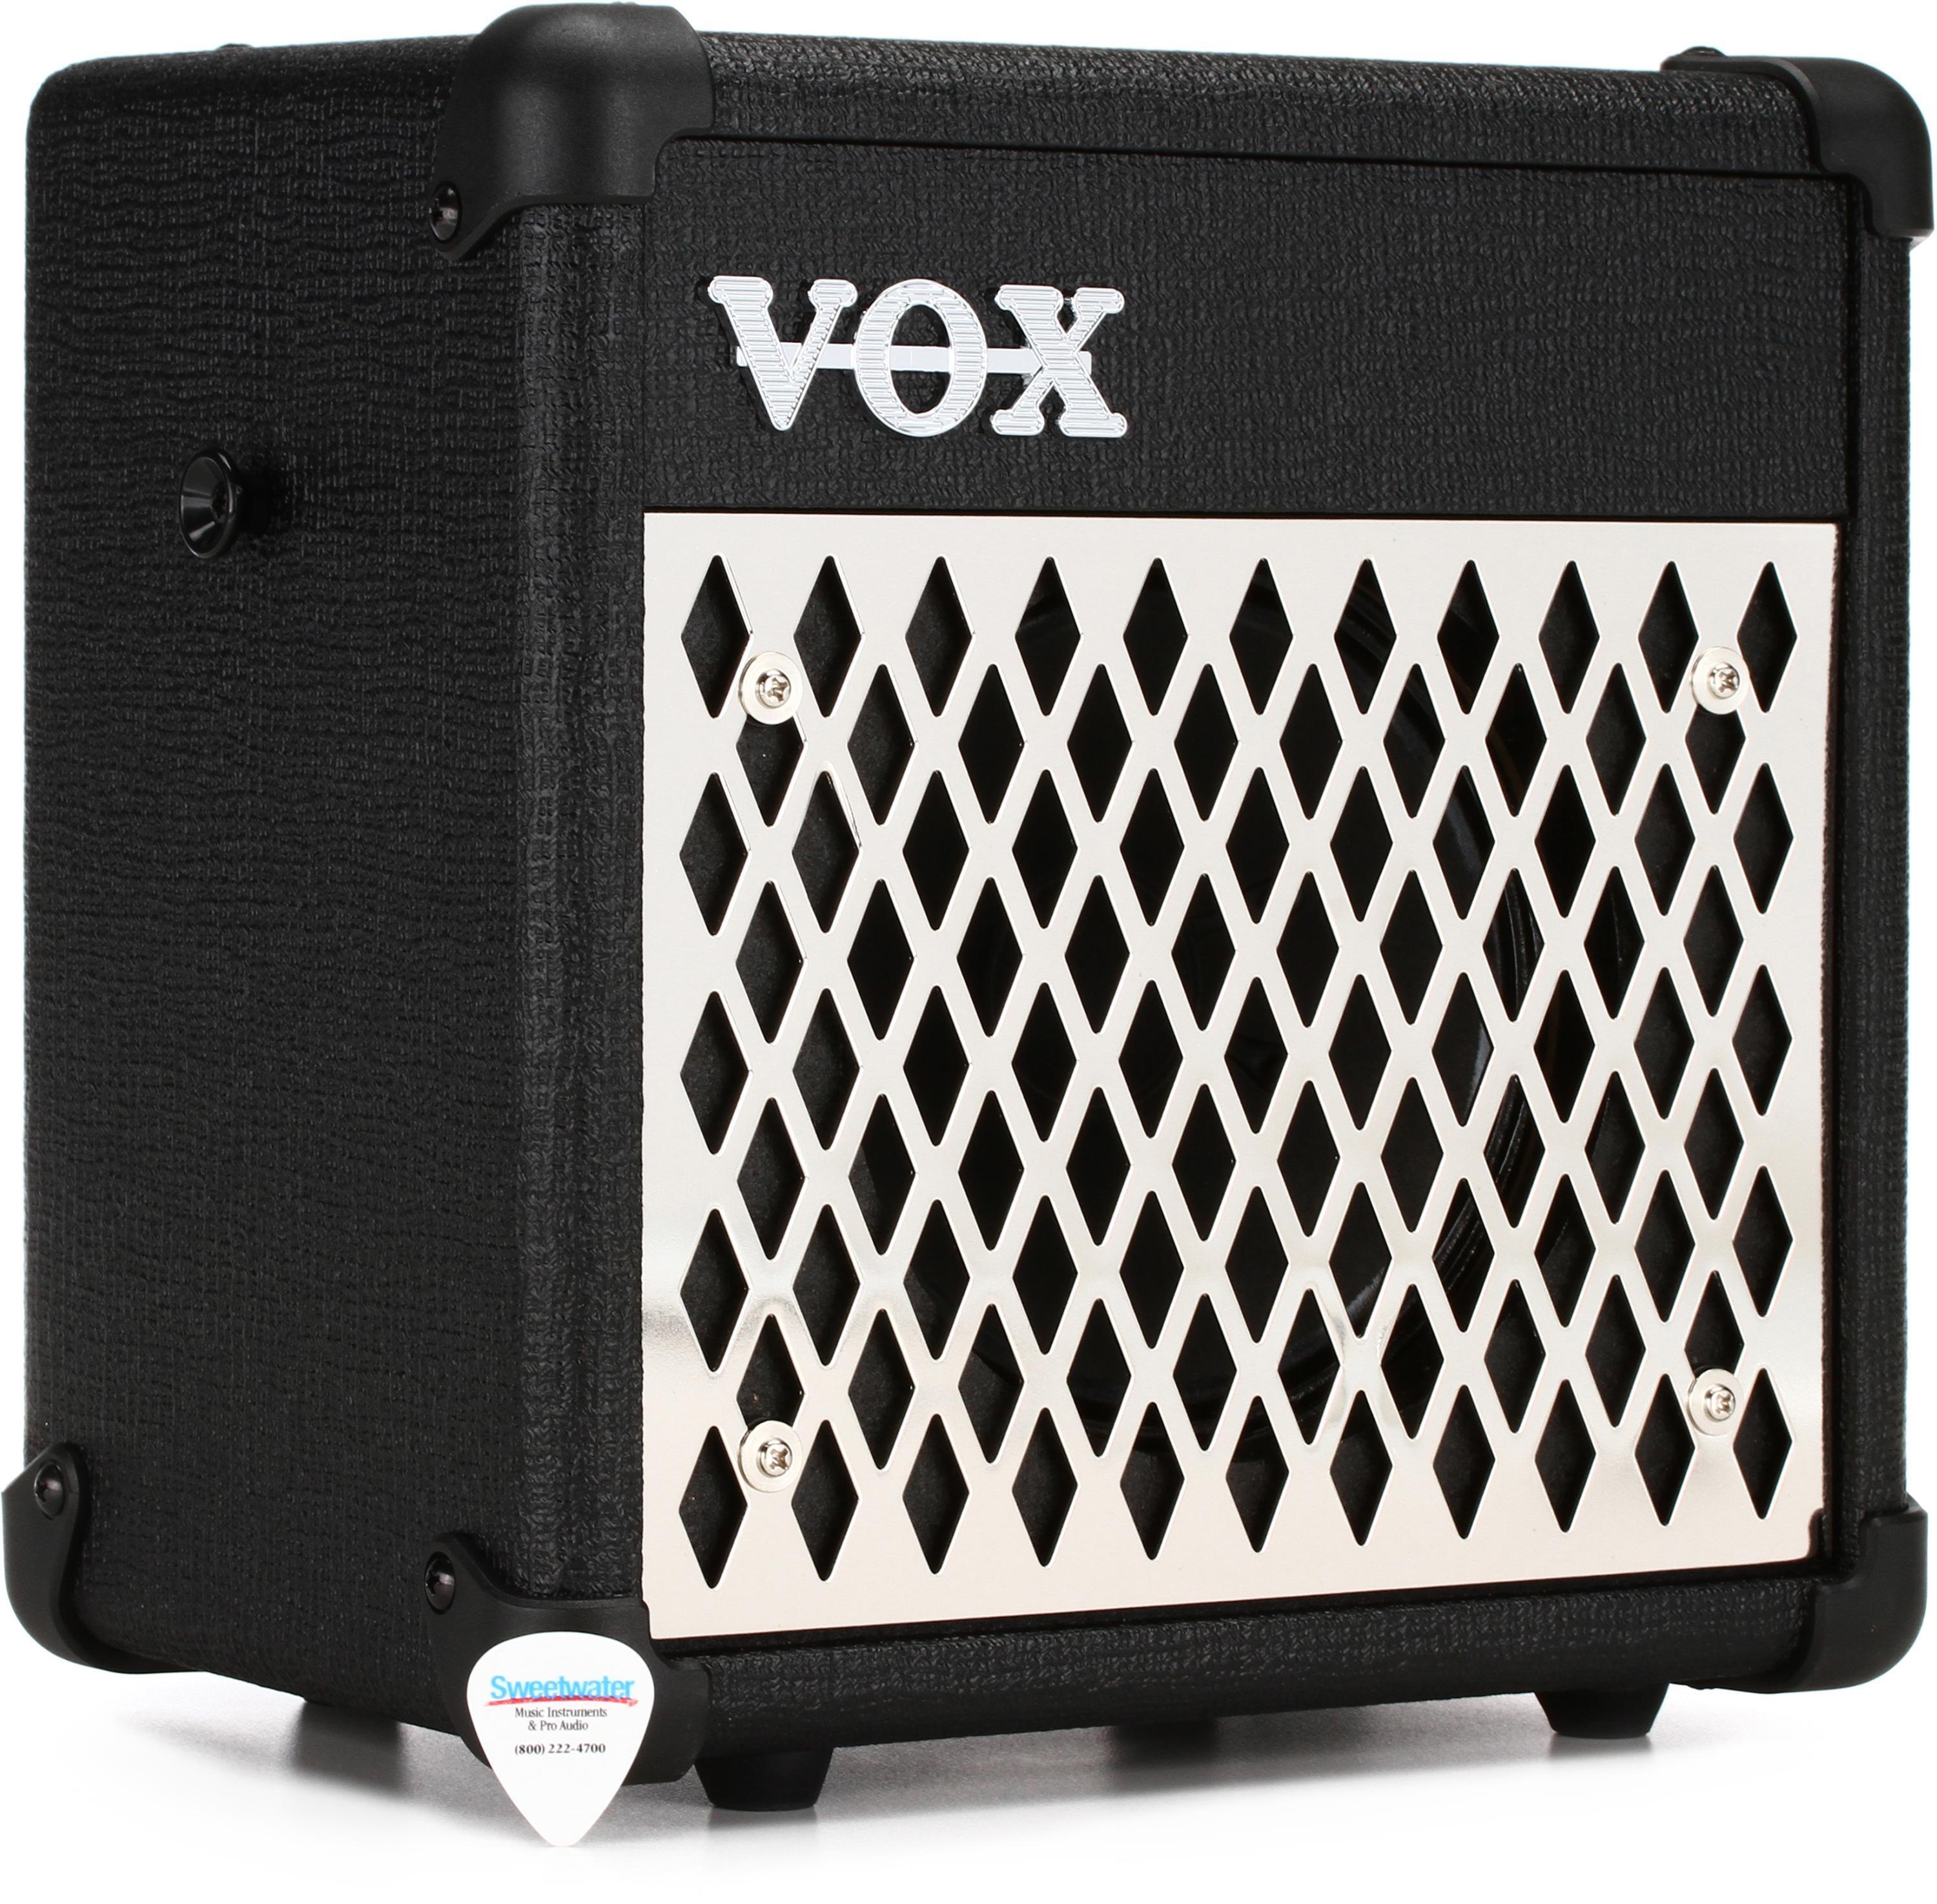 Vox Mini5 Rhythm 5 watt 1x6.5" Portable Amp with On board Rhythm